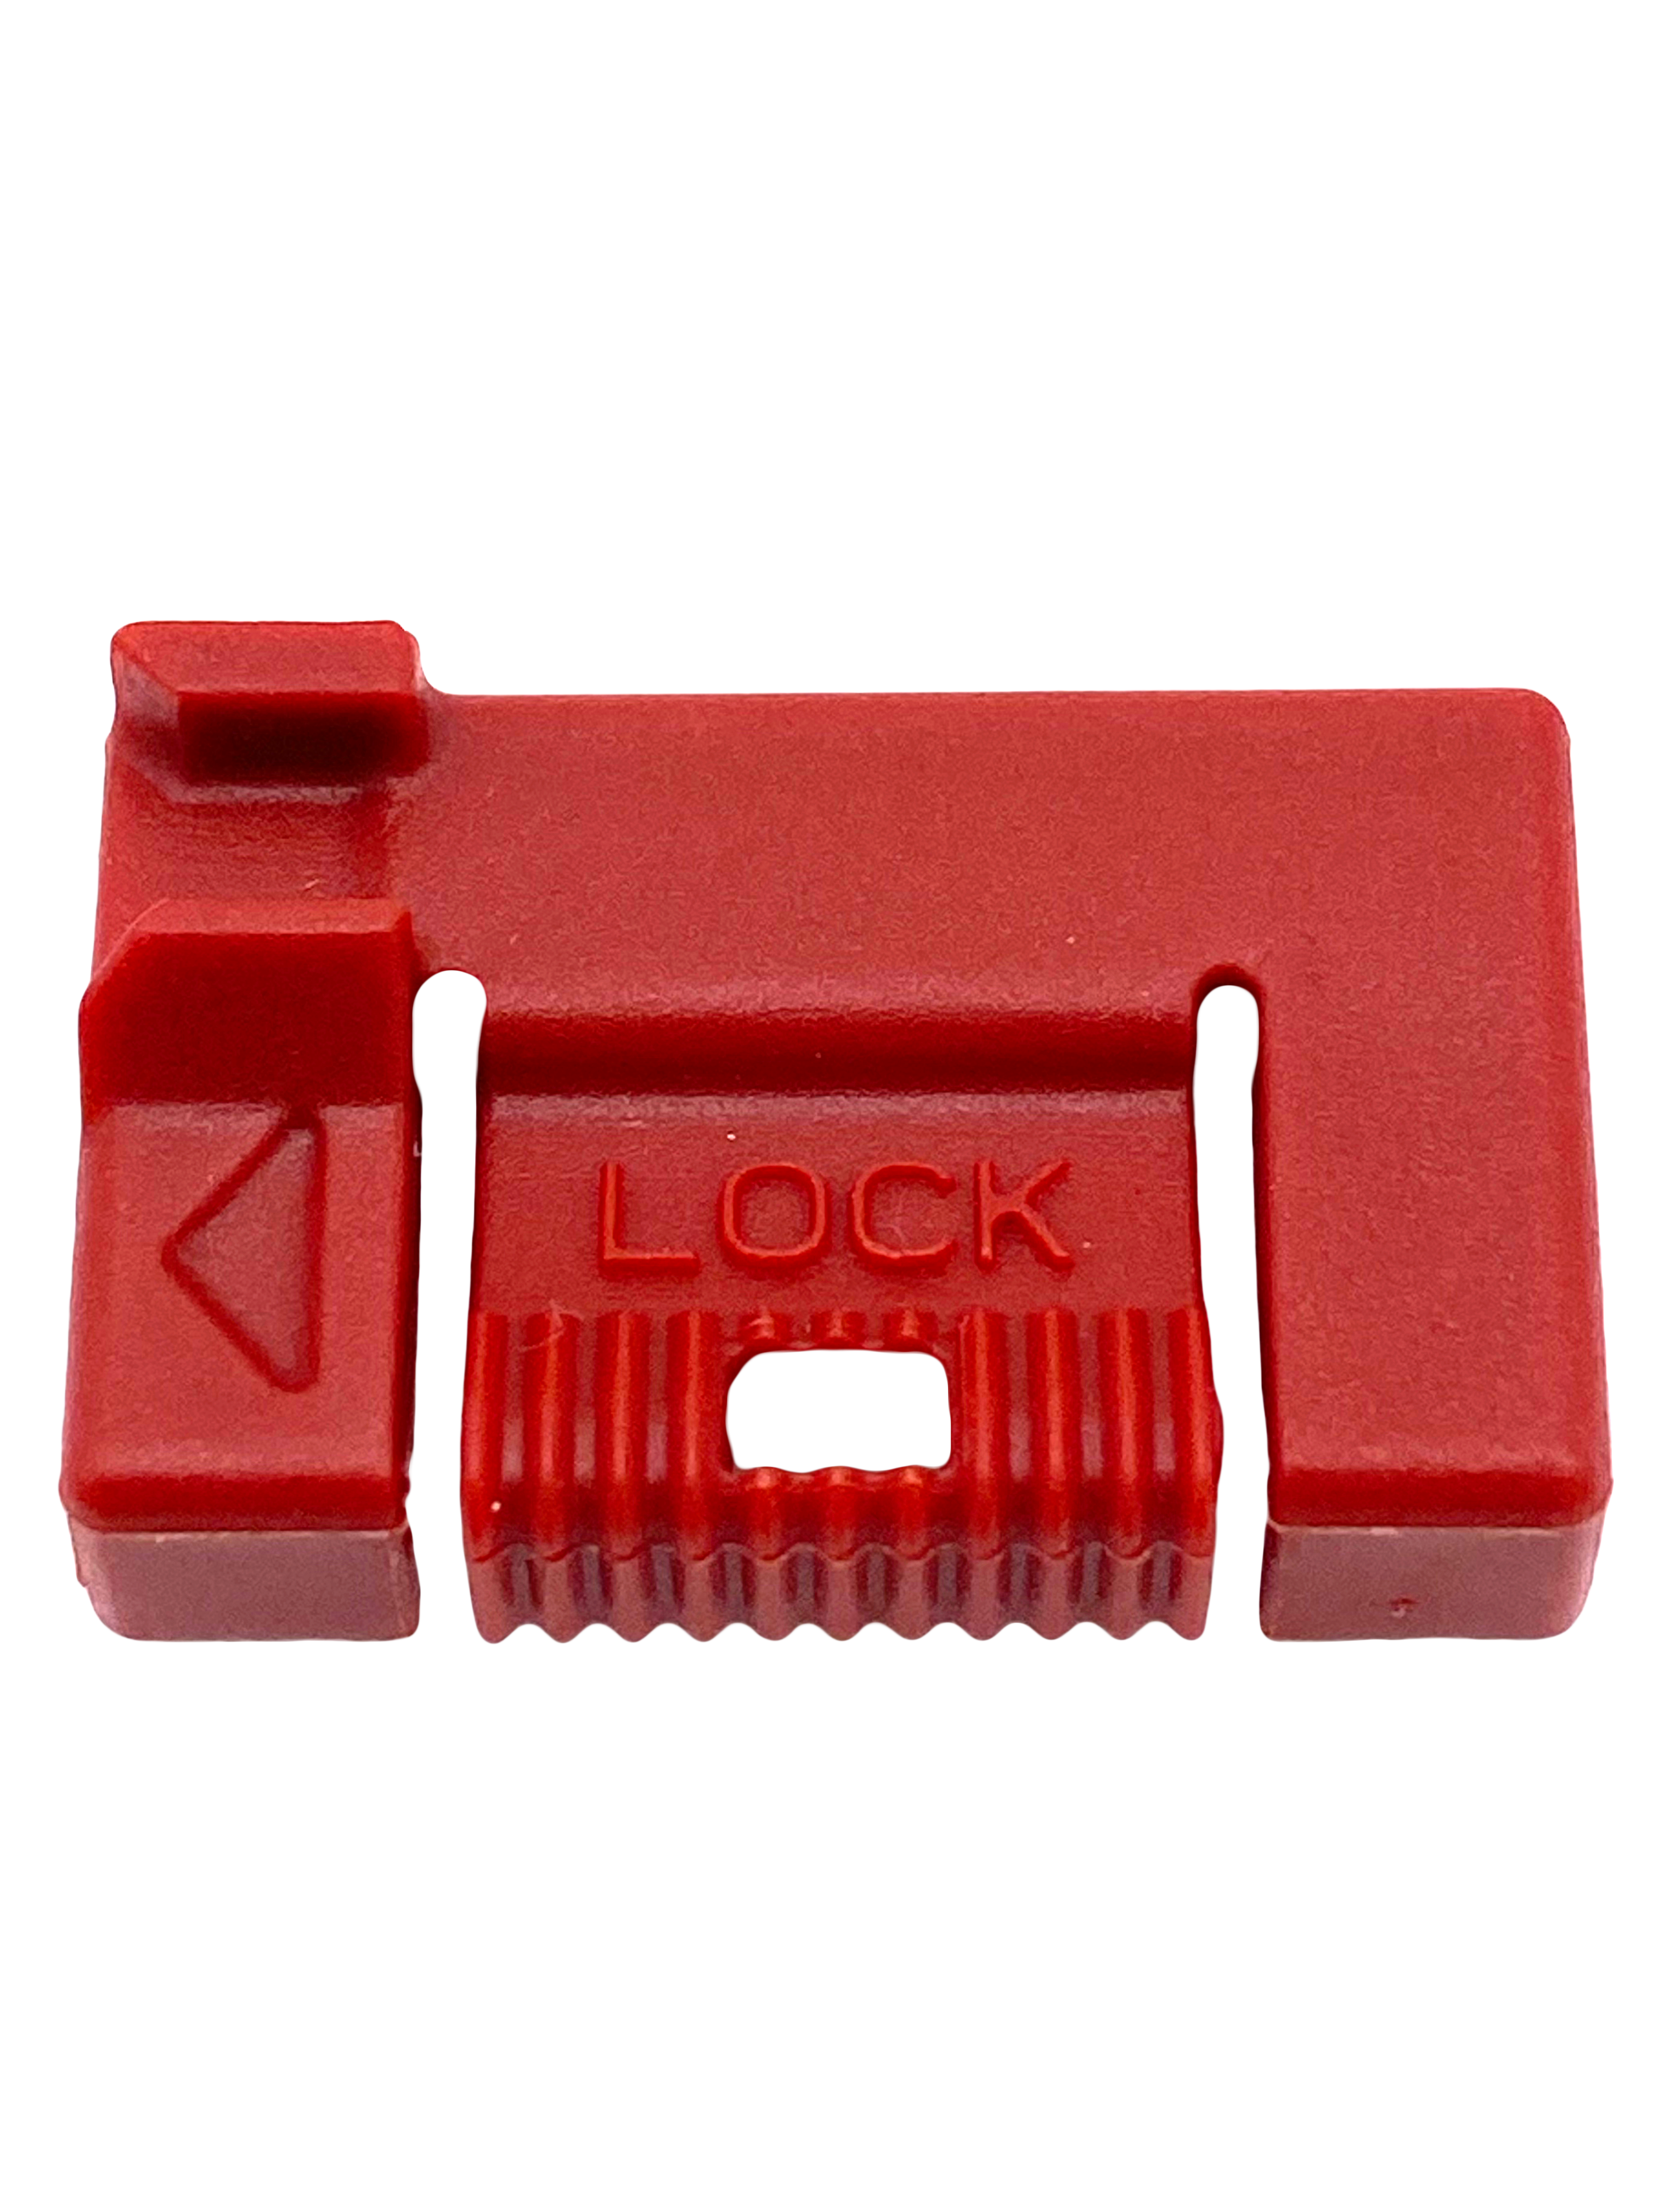 Replacement Lock: Cat Mate Lockable Cat Flaps (M304TP1)